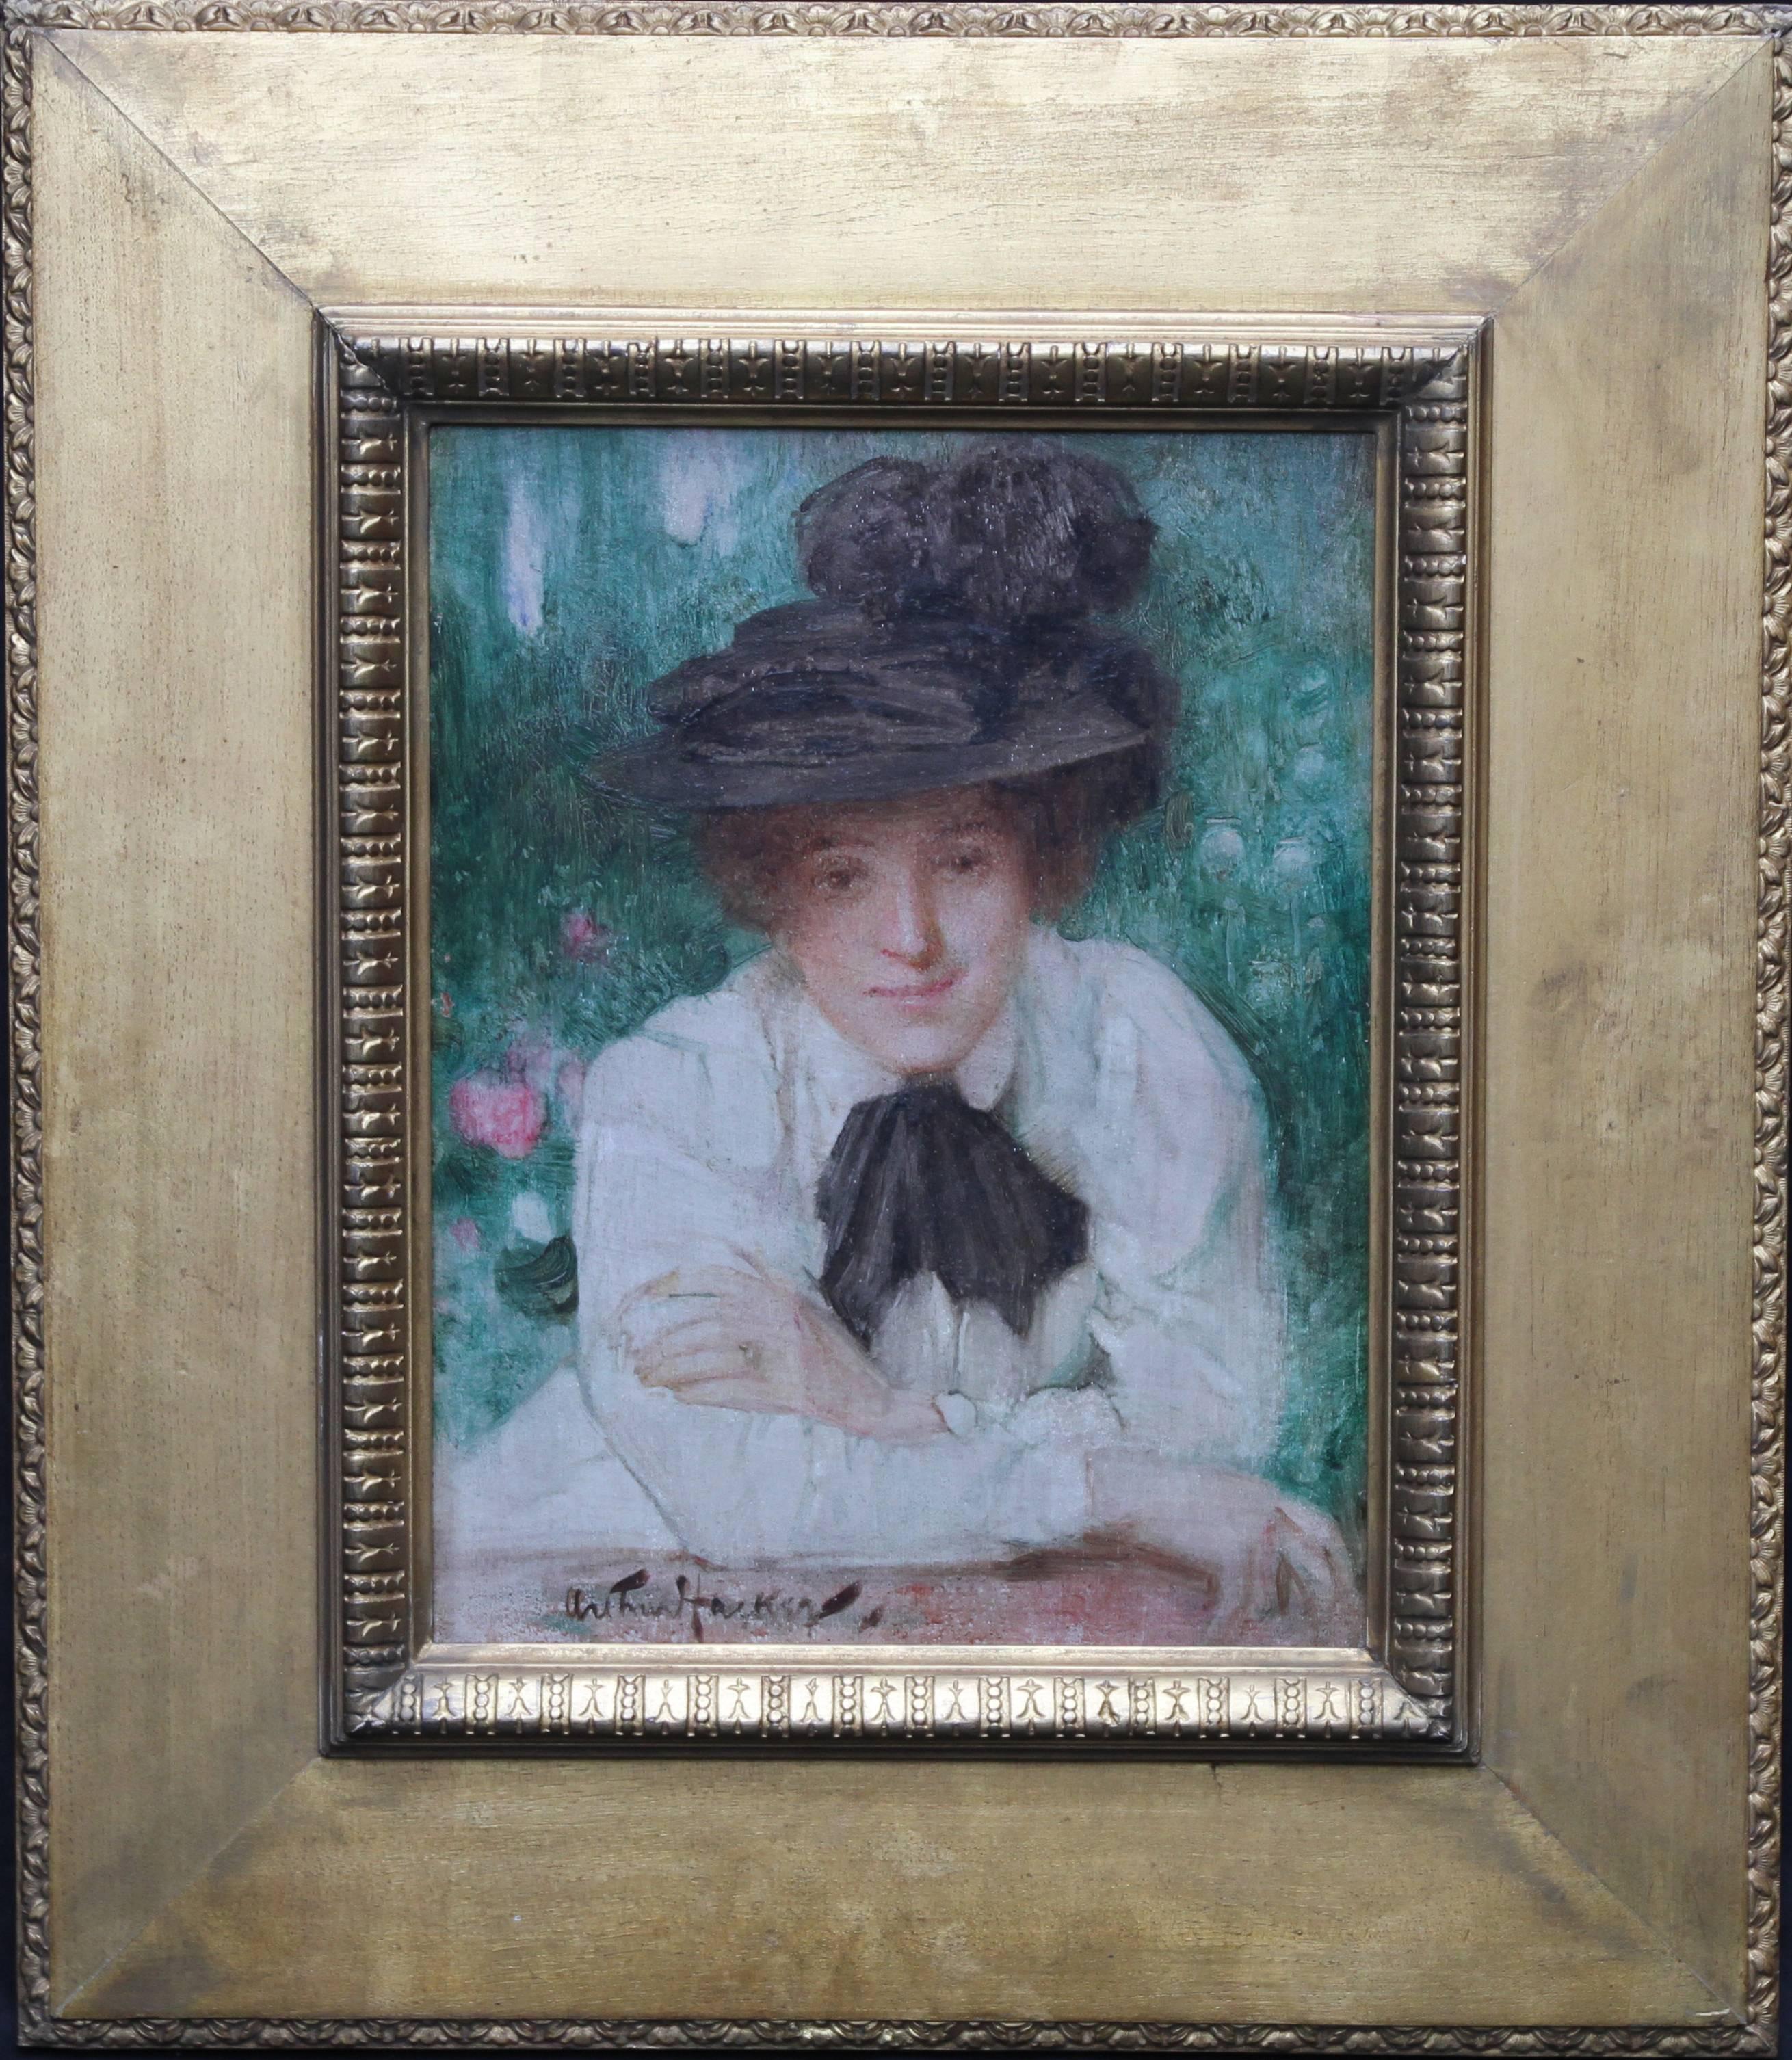 Arthur Hacker Portrait Painting – Porträt einer edwardianischen Dame – britisches impressionistisches Ölgemälde mit schwarzem Hut